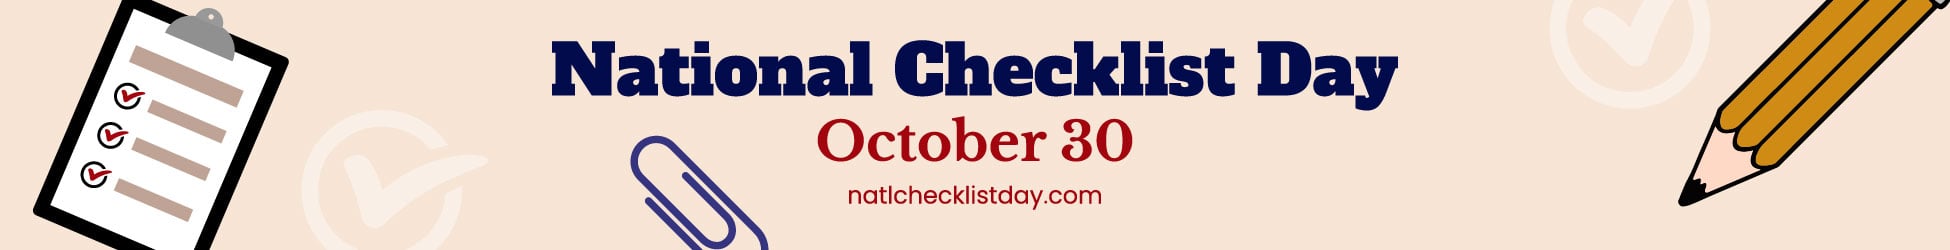 National Checklist Day Website Banner